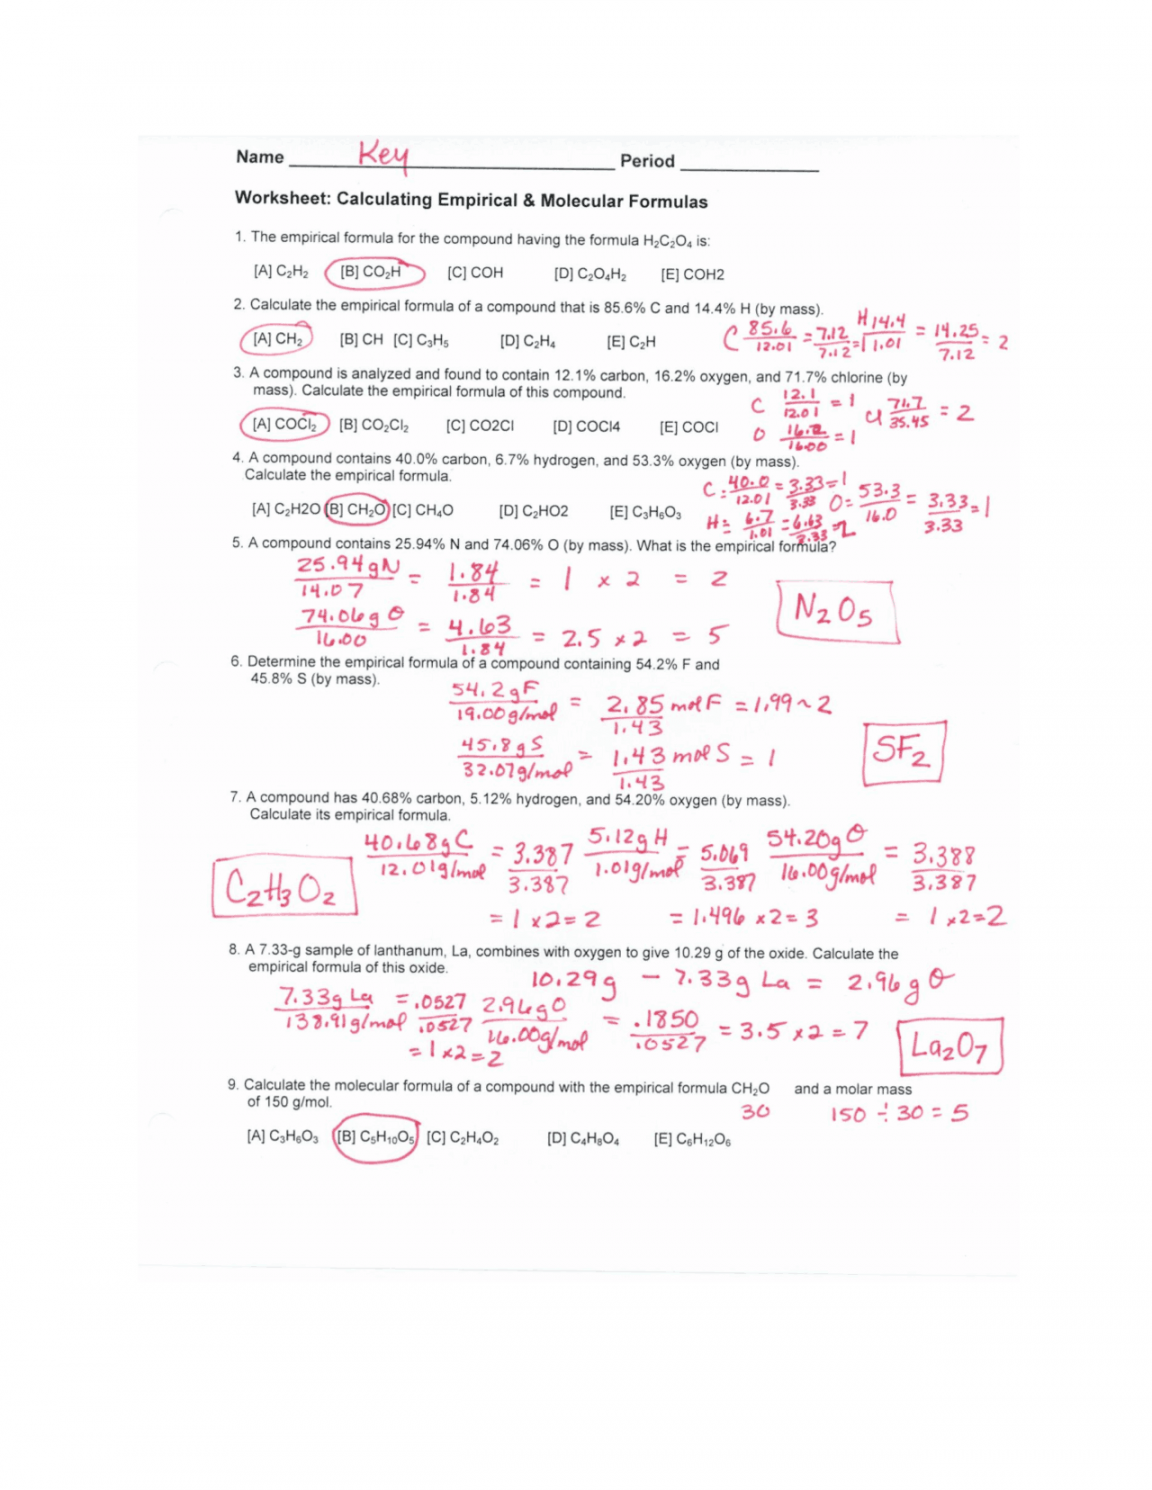 PDF CalculationG Empirical and Molecular Formulas WS Key  Study